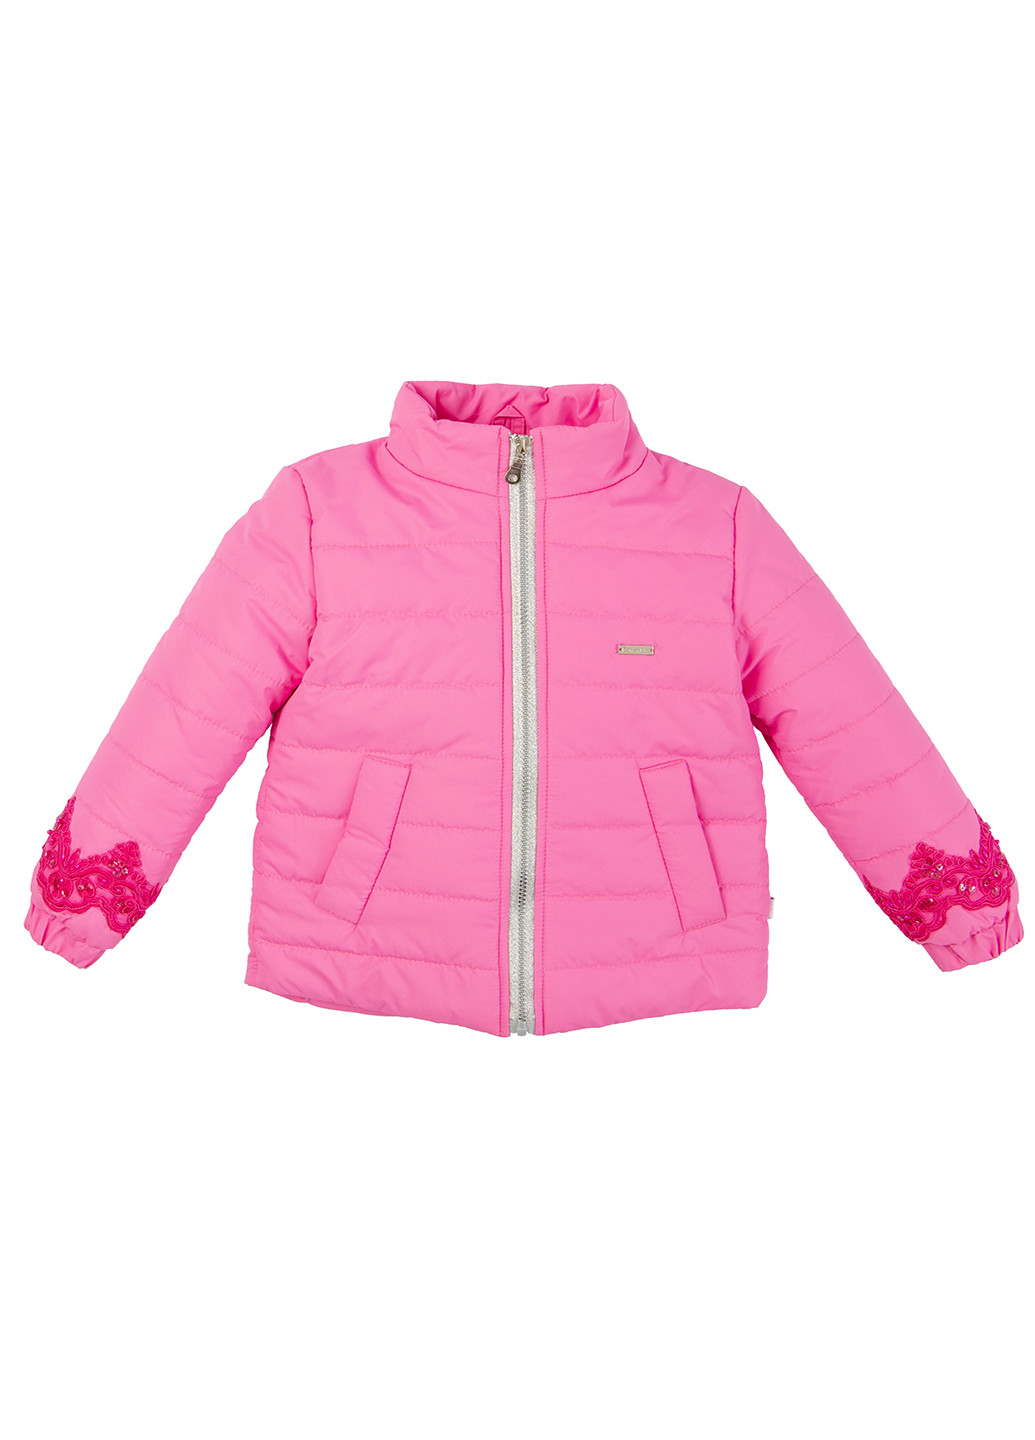 Розовая демисезонная куртка Fashion Kids